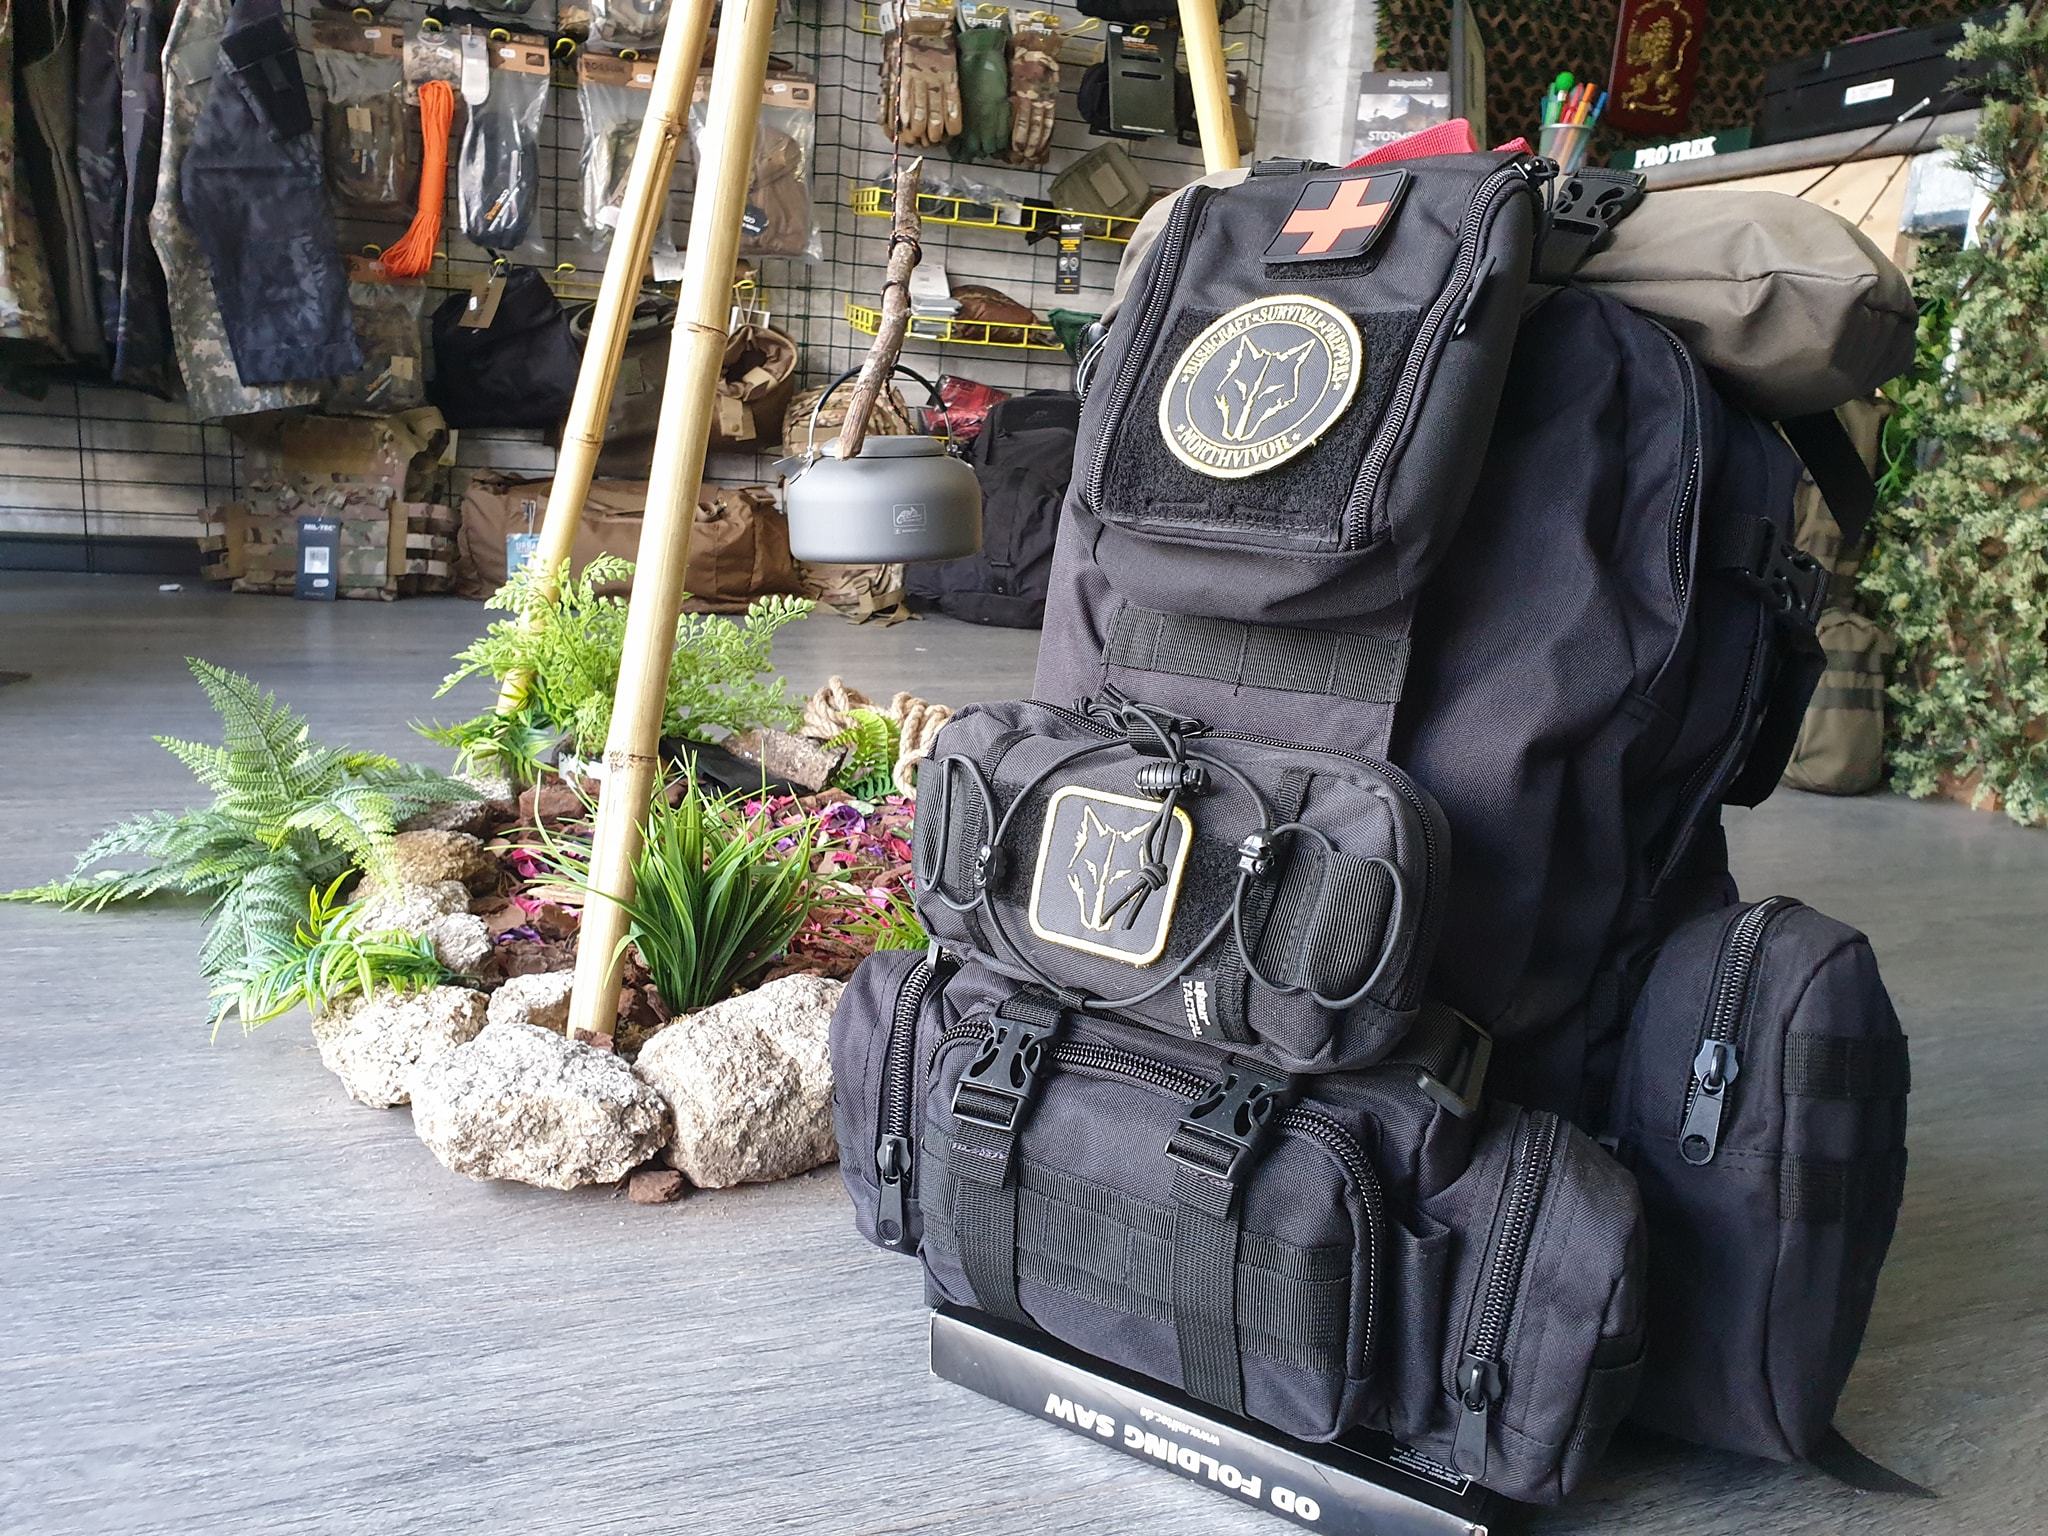 La mochila de 72 horas o mochila de emergencia ante una catástrofe